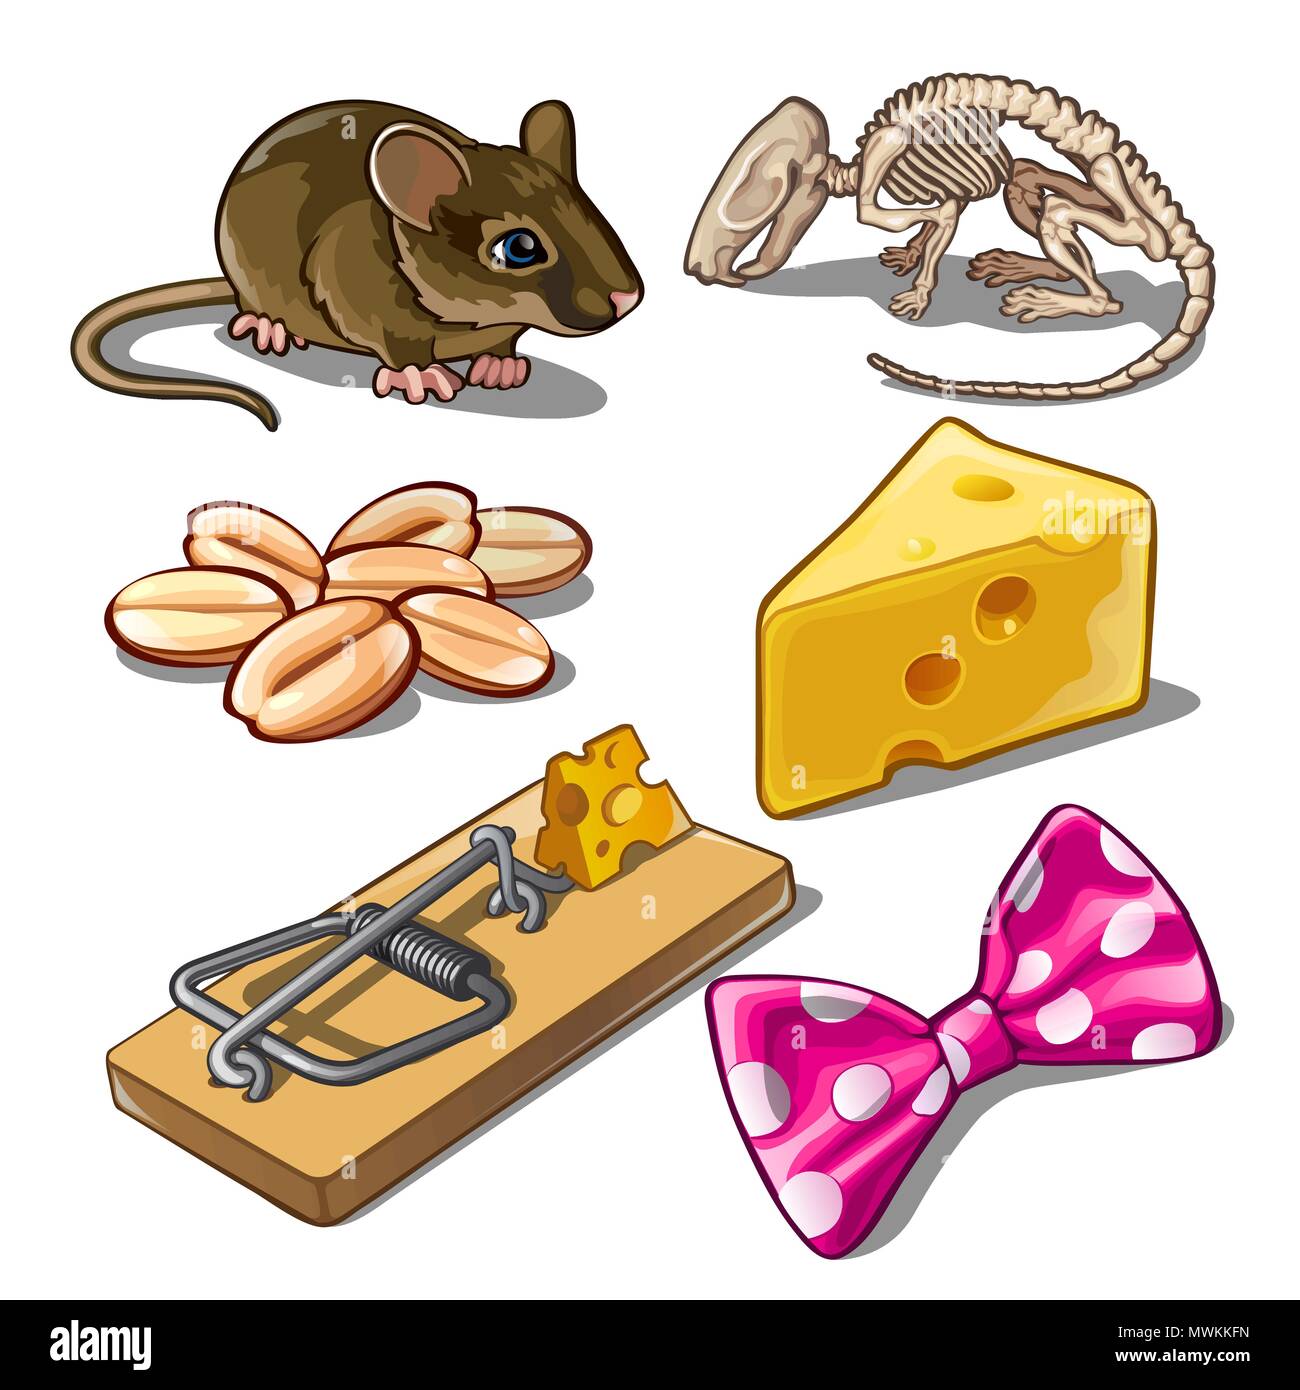 L'ensemble des objets sur l'objet d'attraper les souris. Vector  illustration Image Vectorielle Stock - Alamy